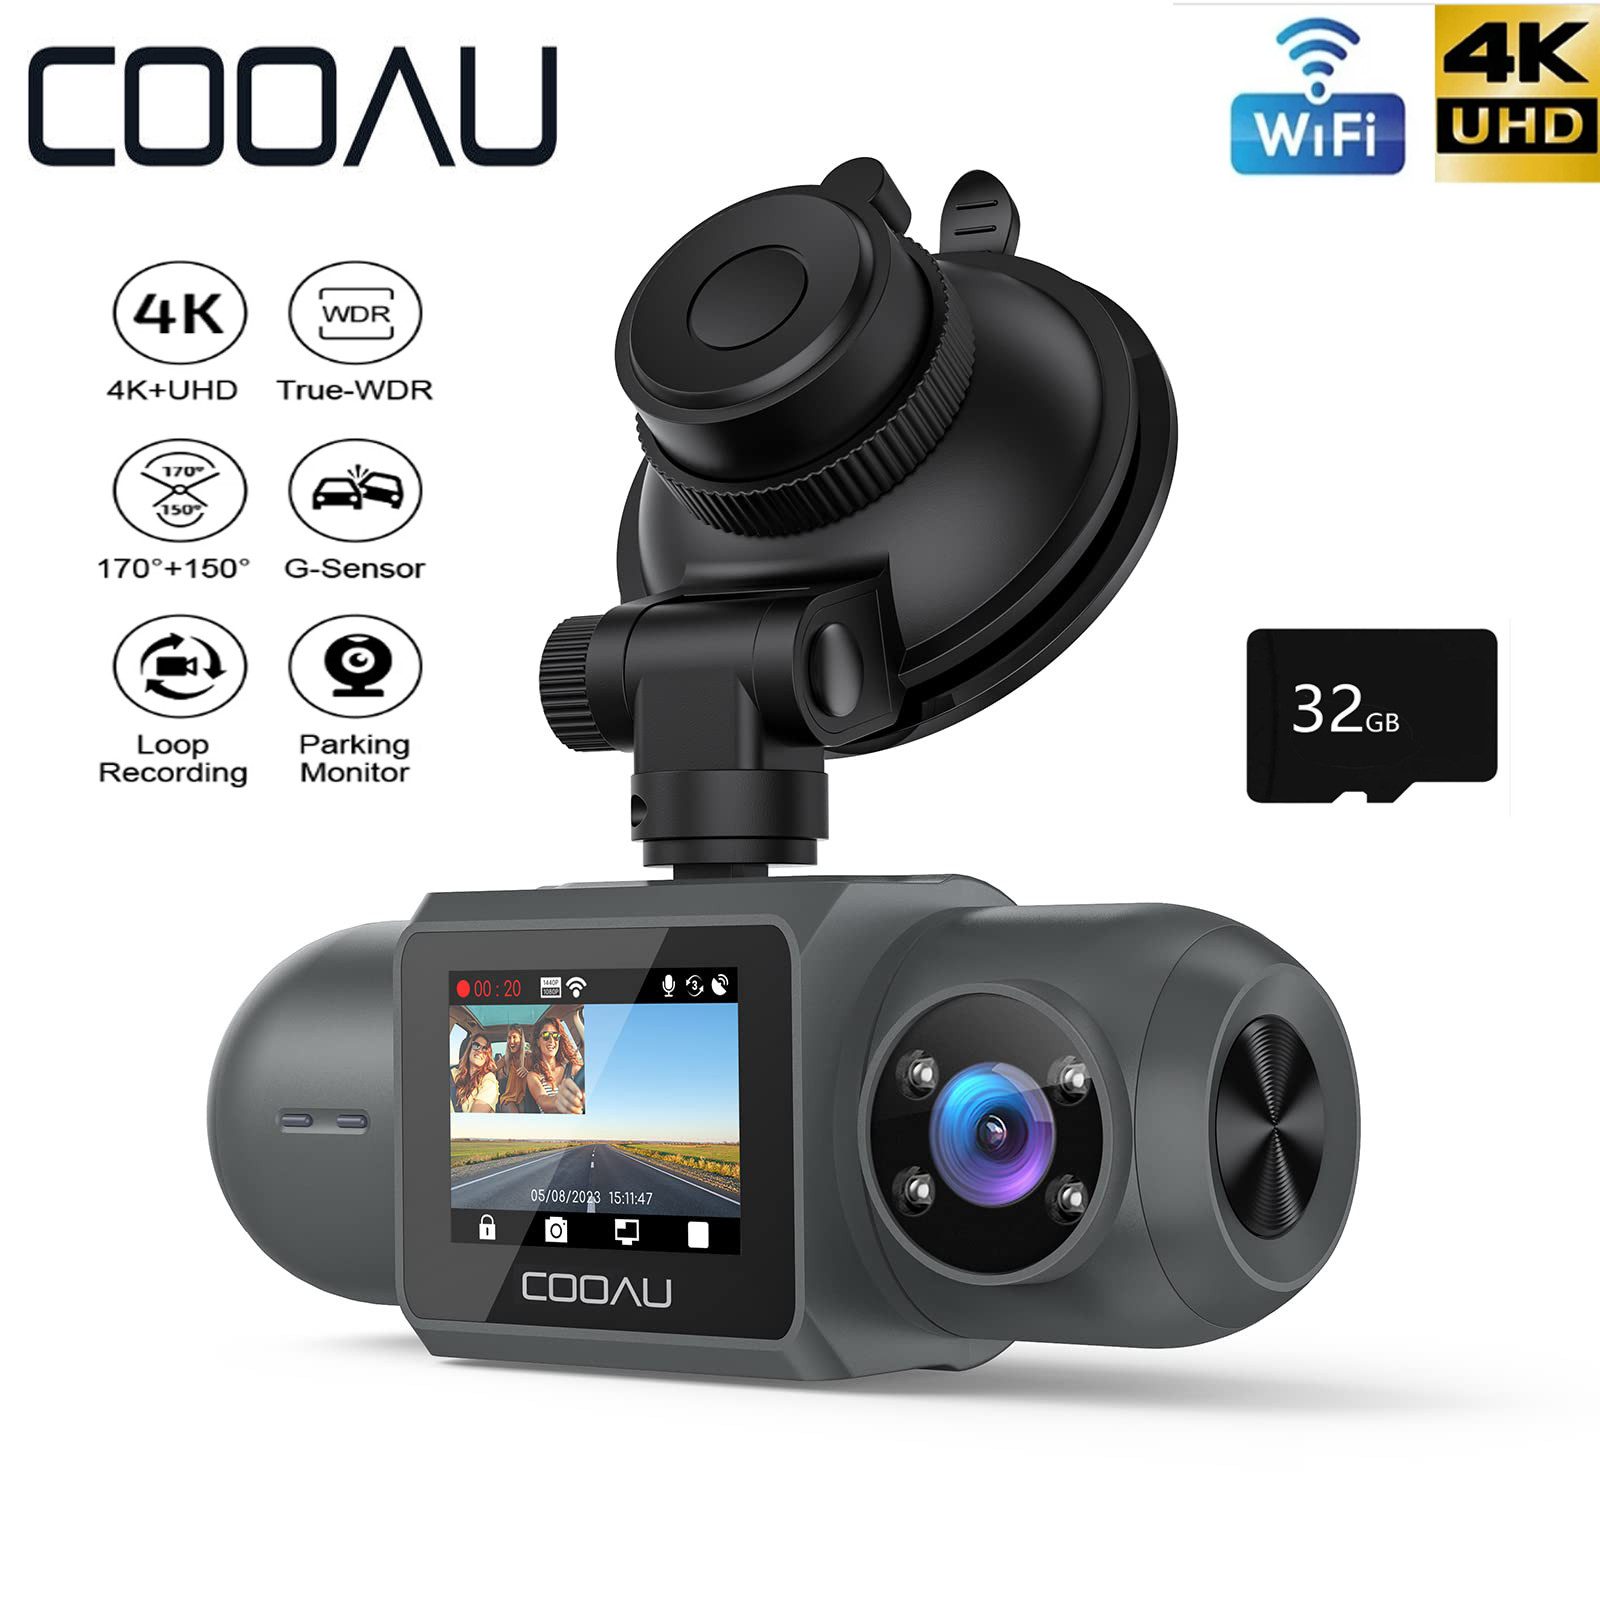 COOAU Dashcam Auto Vorne Hinten 4k/1080P WiFi GPS Dual Dash Cam mit 32GB SD Dashcam (4K Ultra HD, WLAN (Wi-Fi), 4x opt. Zoom, APP-Verbindung, Sprachauf zeichnung, Unfallsperre, mit Loop-Recordning, G-Sensor-Erkennung,und 24-Stunden Parkmonitor)